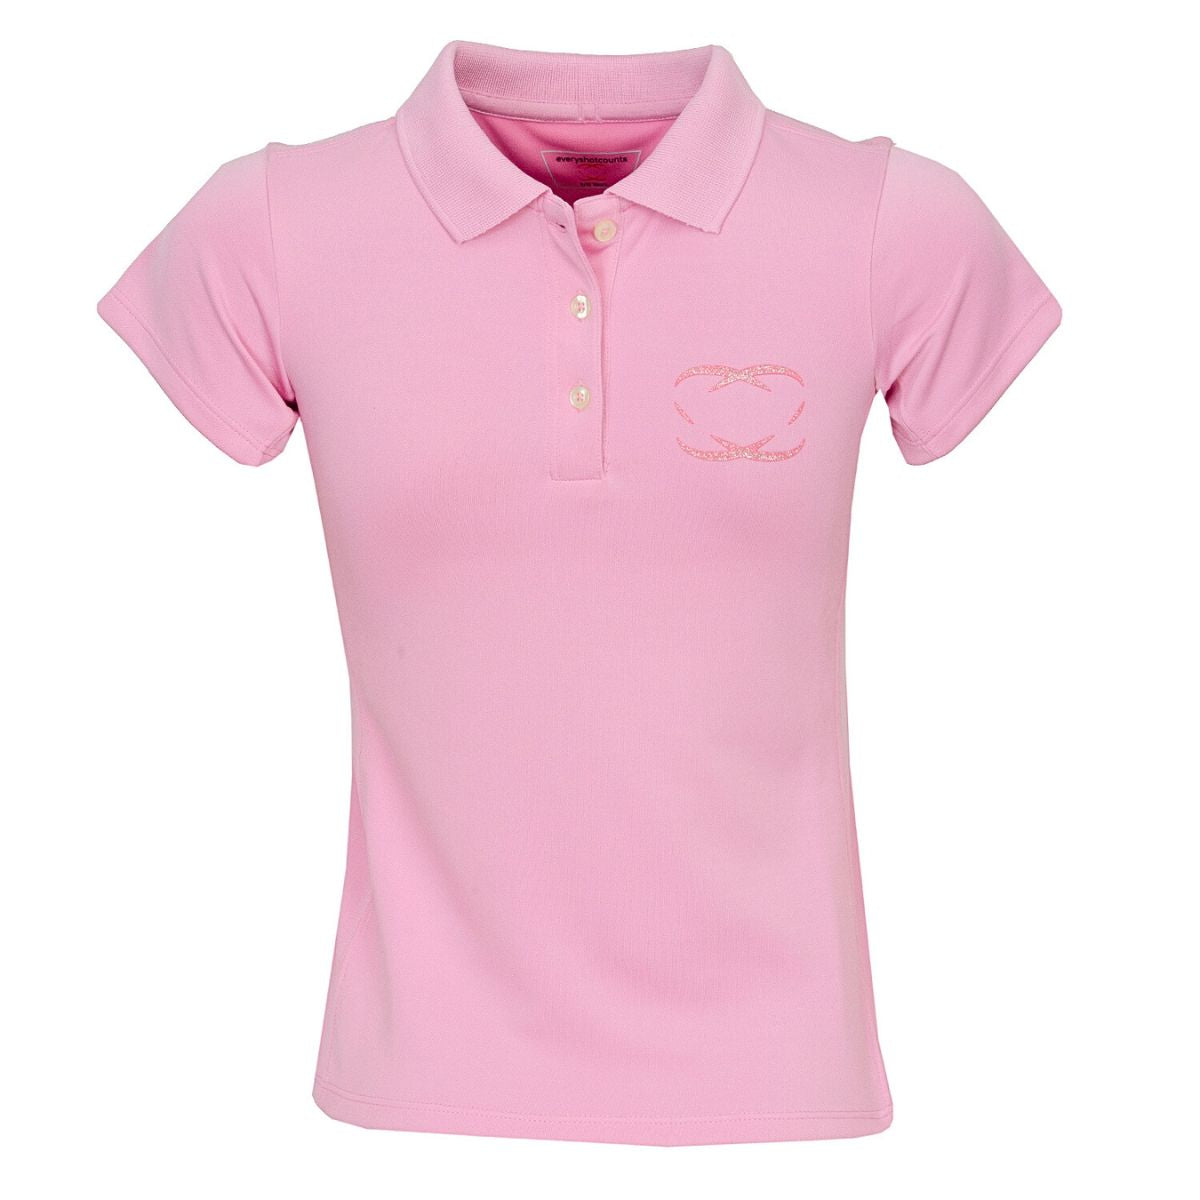 Girls Golf Polo Shirt - Pink